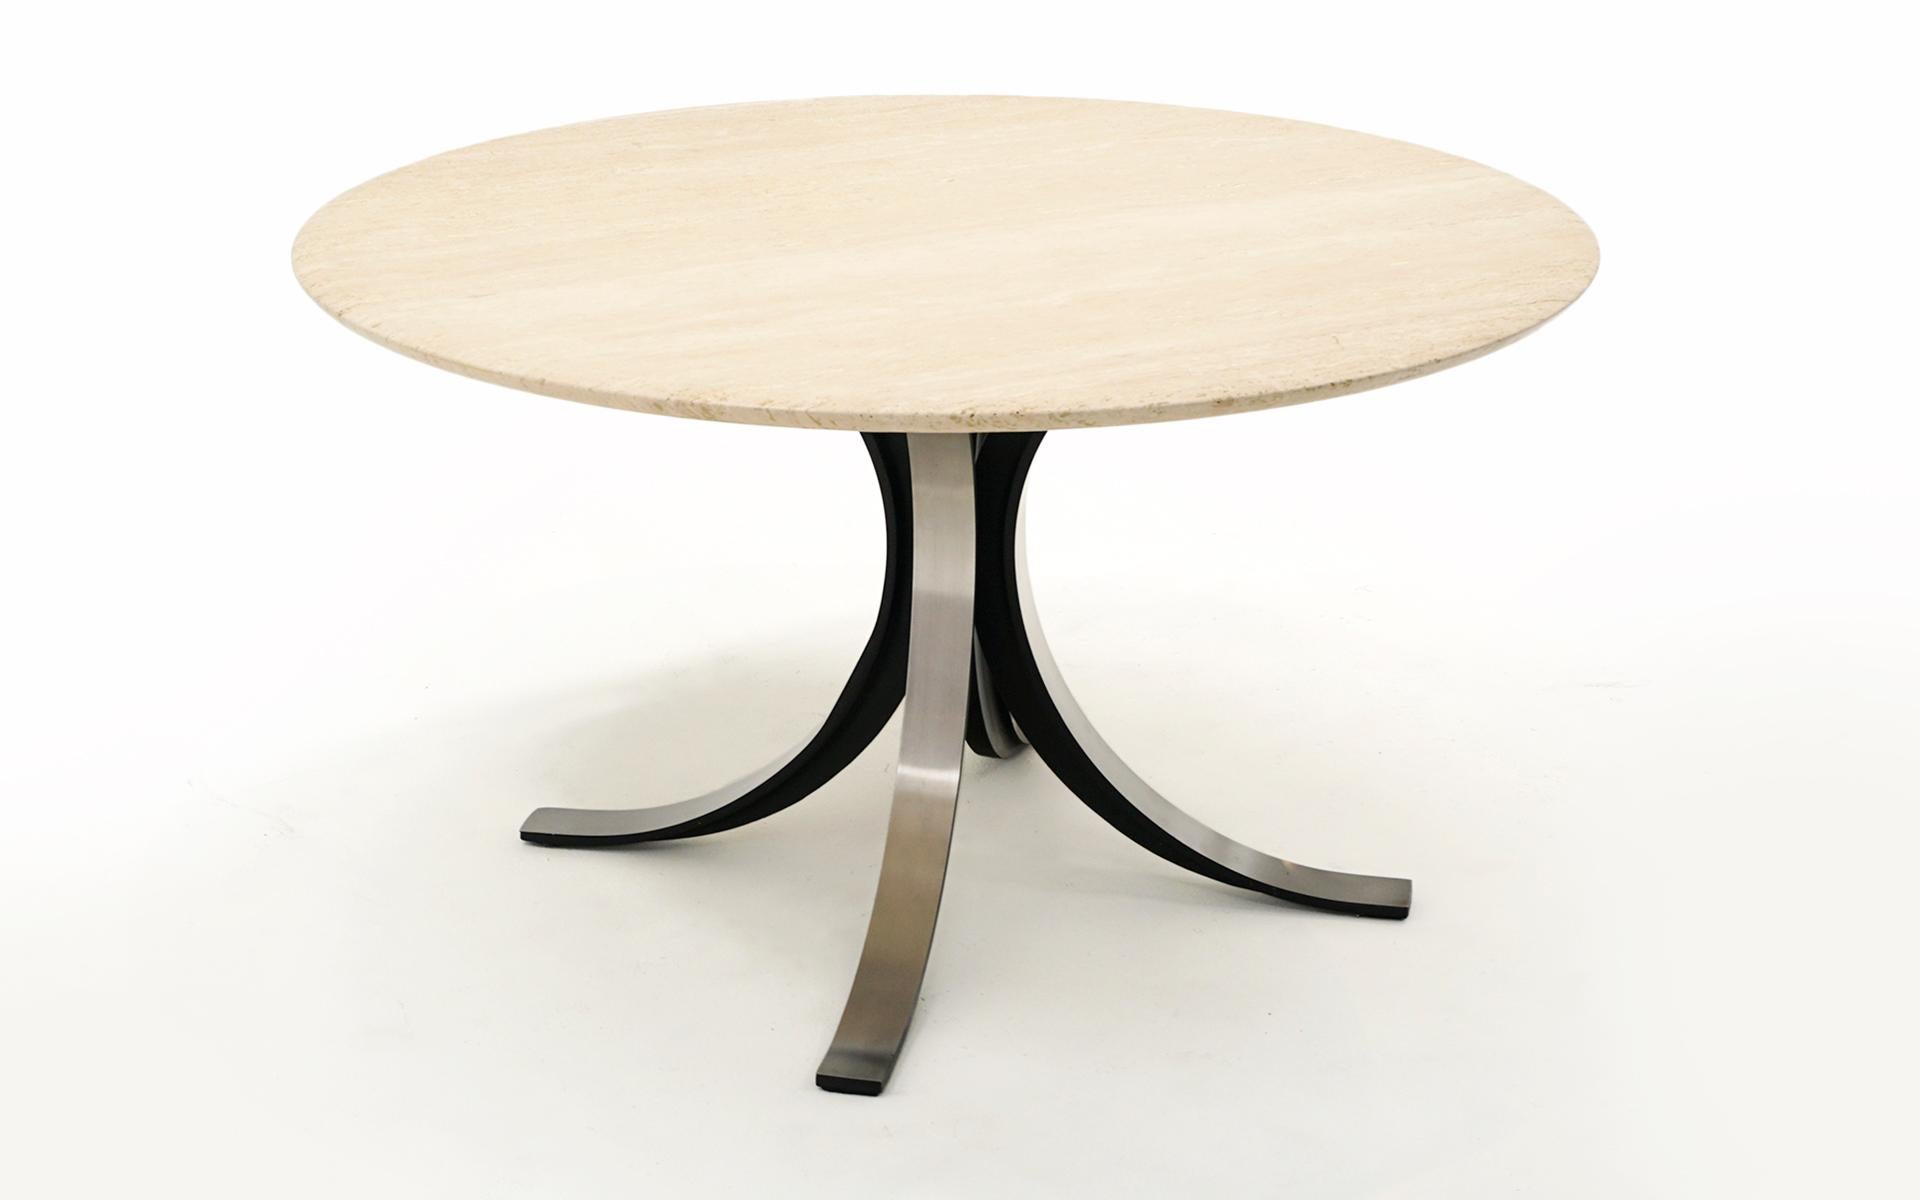 Table de salle à manger, table centrale ou table de jeu Osvaldo Borsani avec le plateau en travertin d'origine d'un pouce d'épaisseur avec un bord légèrement effilé.  Base en acier noir avec panneaux en aluminium.  Il y a un anneau d'eau sur le